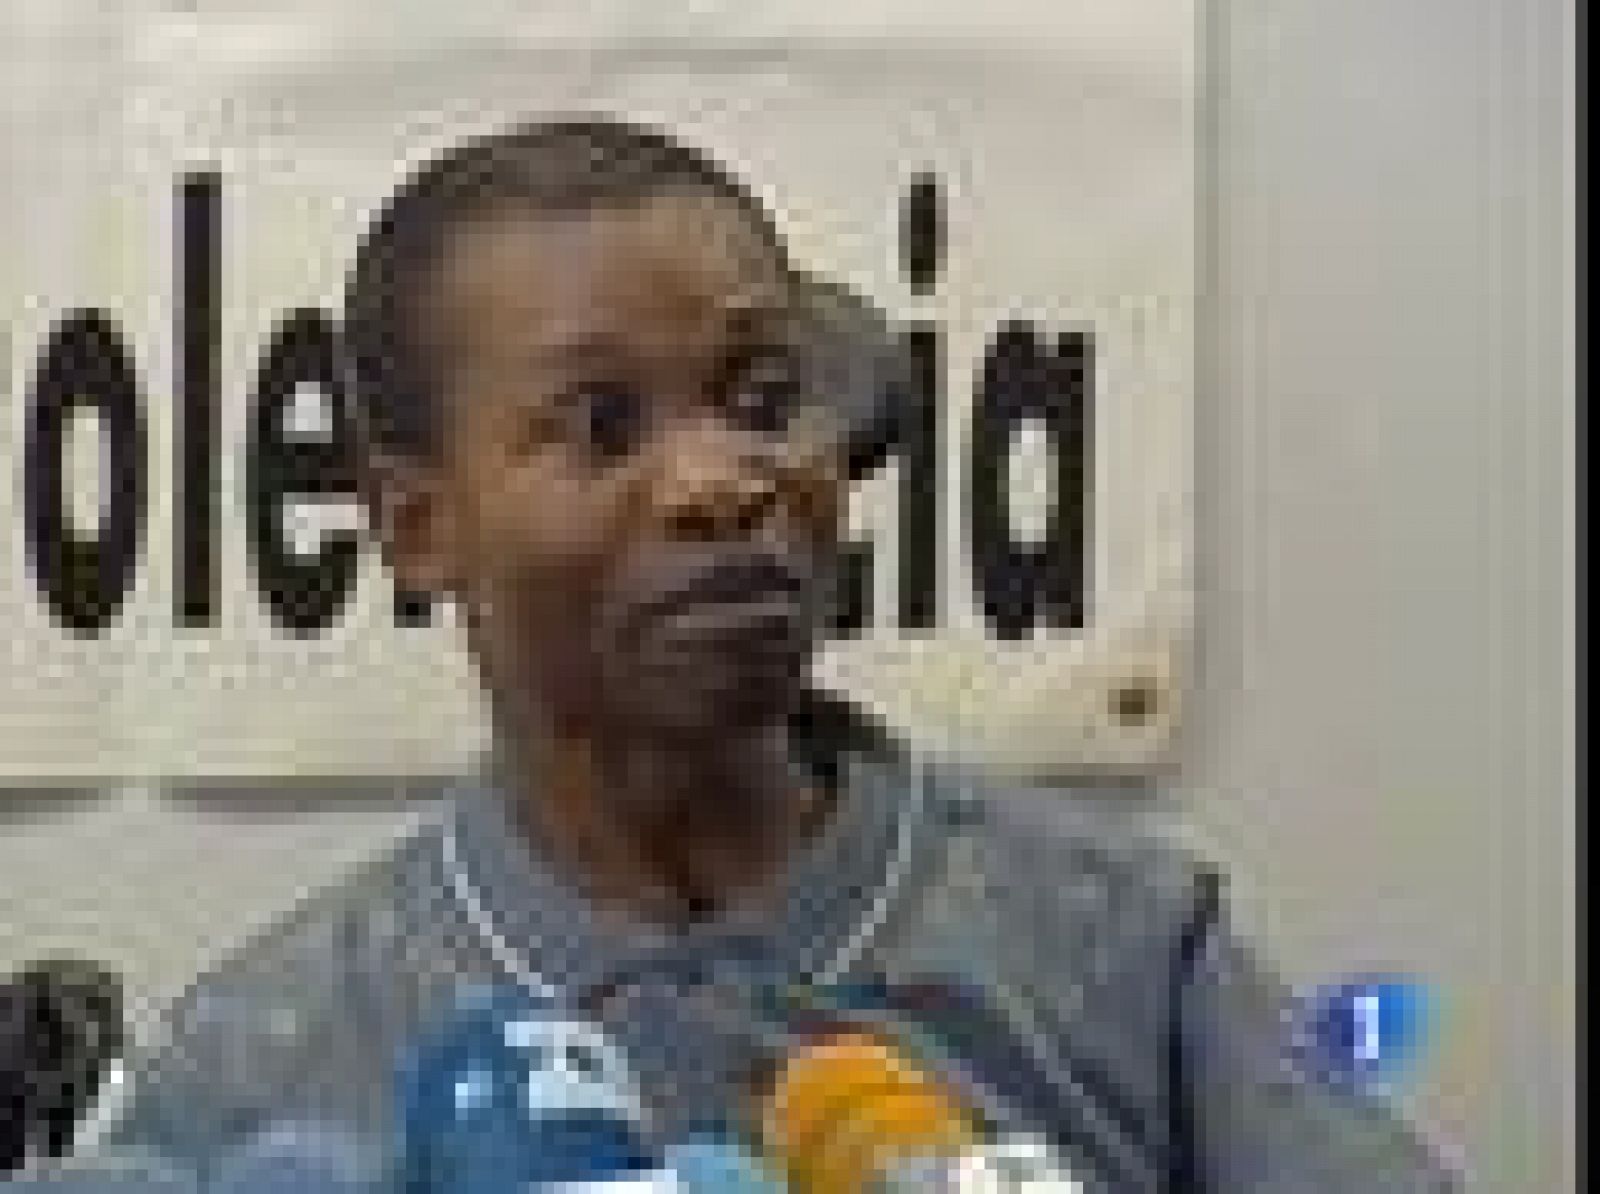 Miwa Buene, el congoleño que quedó tetrapléjico tras recibir un puñetazo, ha comentado hoy la sentencia que ayer condenó a su agresor a diez años de cárcel. Está satisfecho y espera que este tipo de agresiones no se repita.